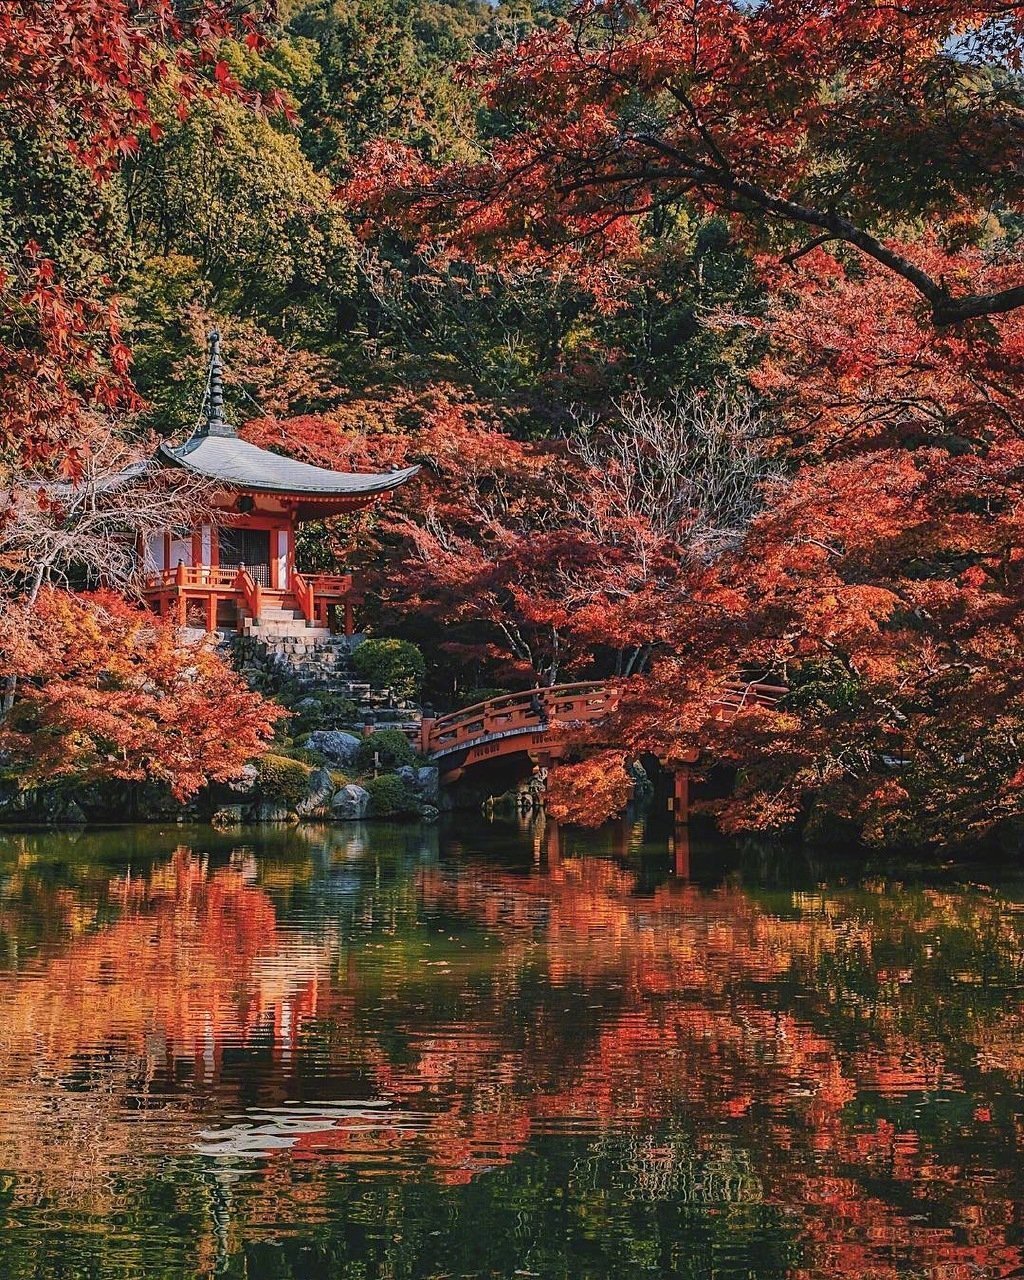 日本京都的红叶 堆糖 美图壁纸兴趣社区